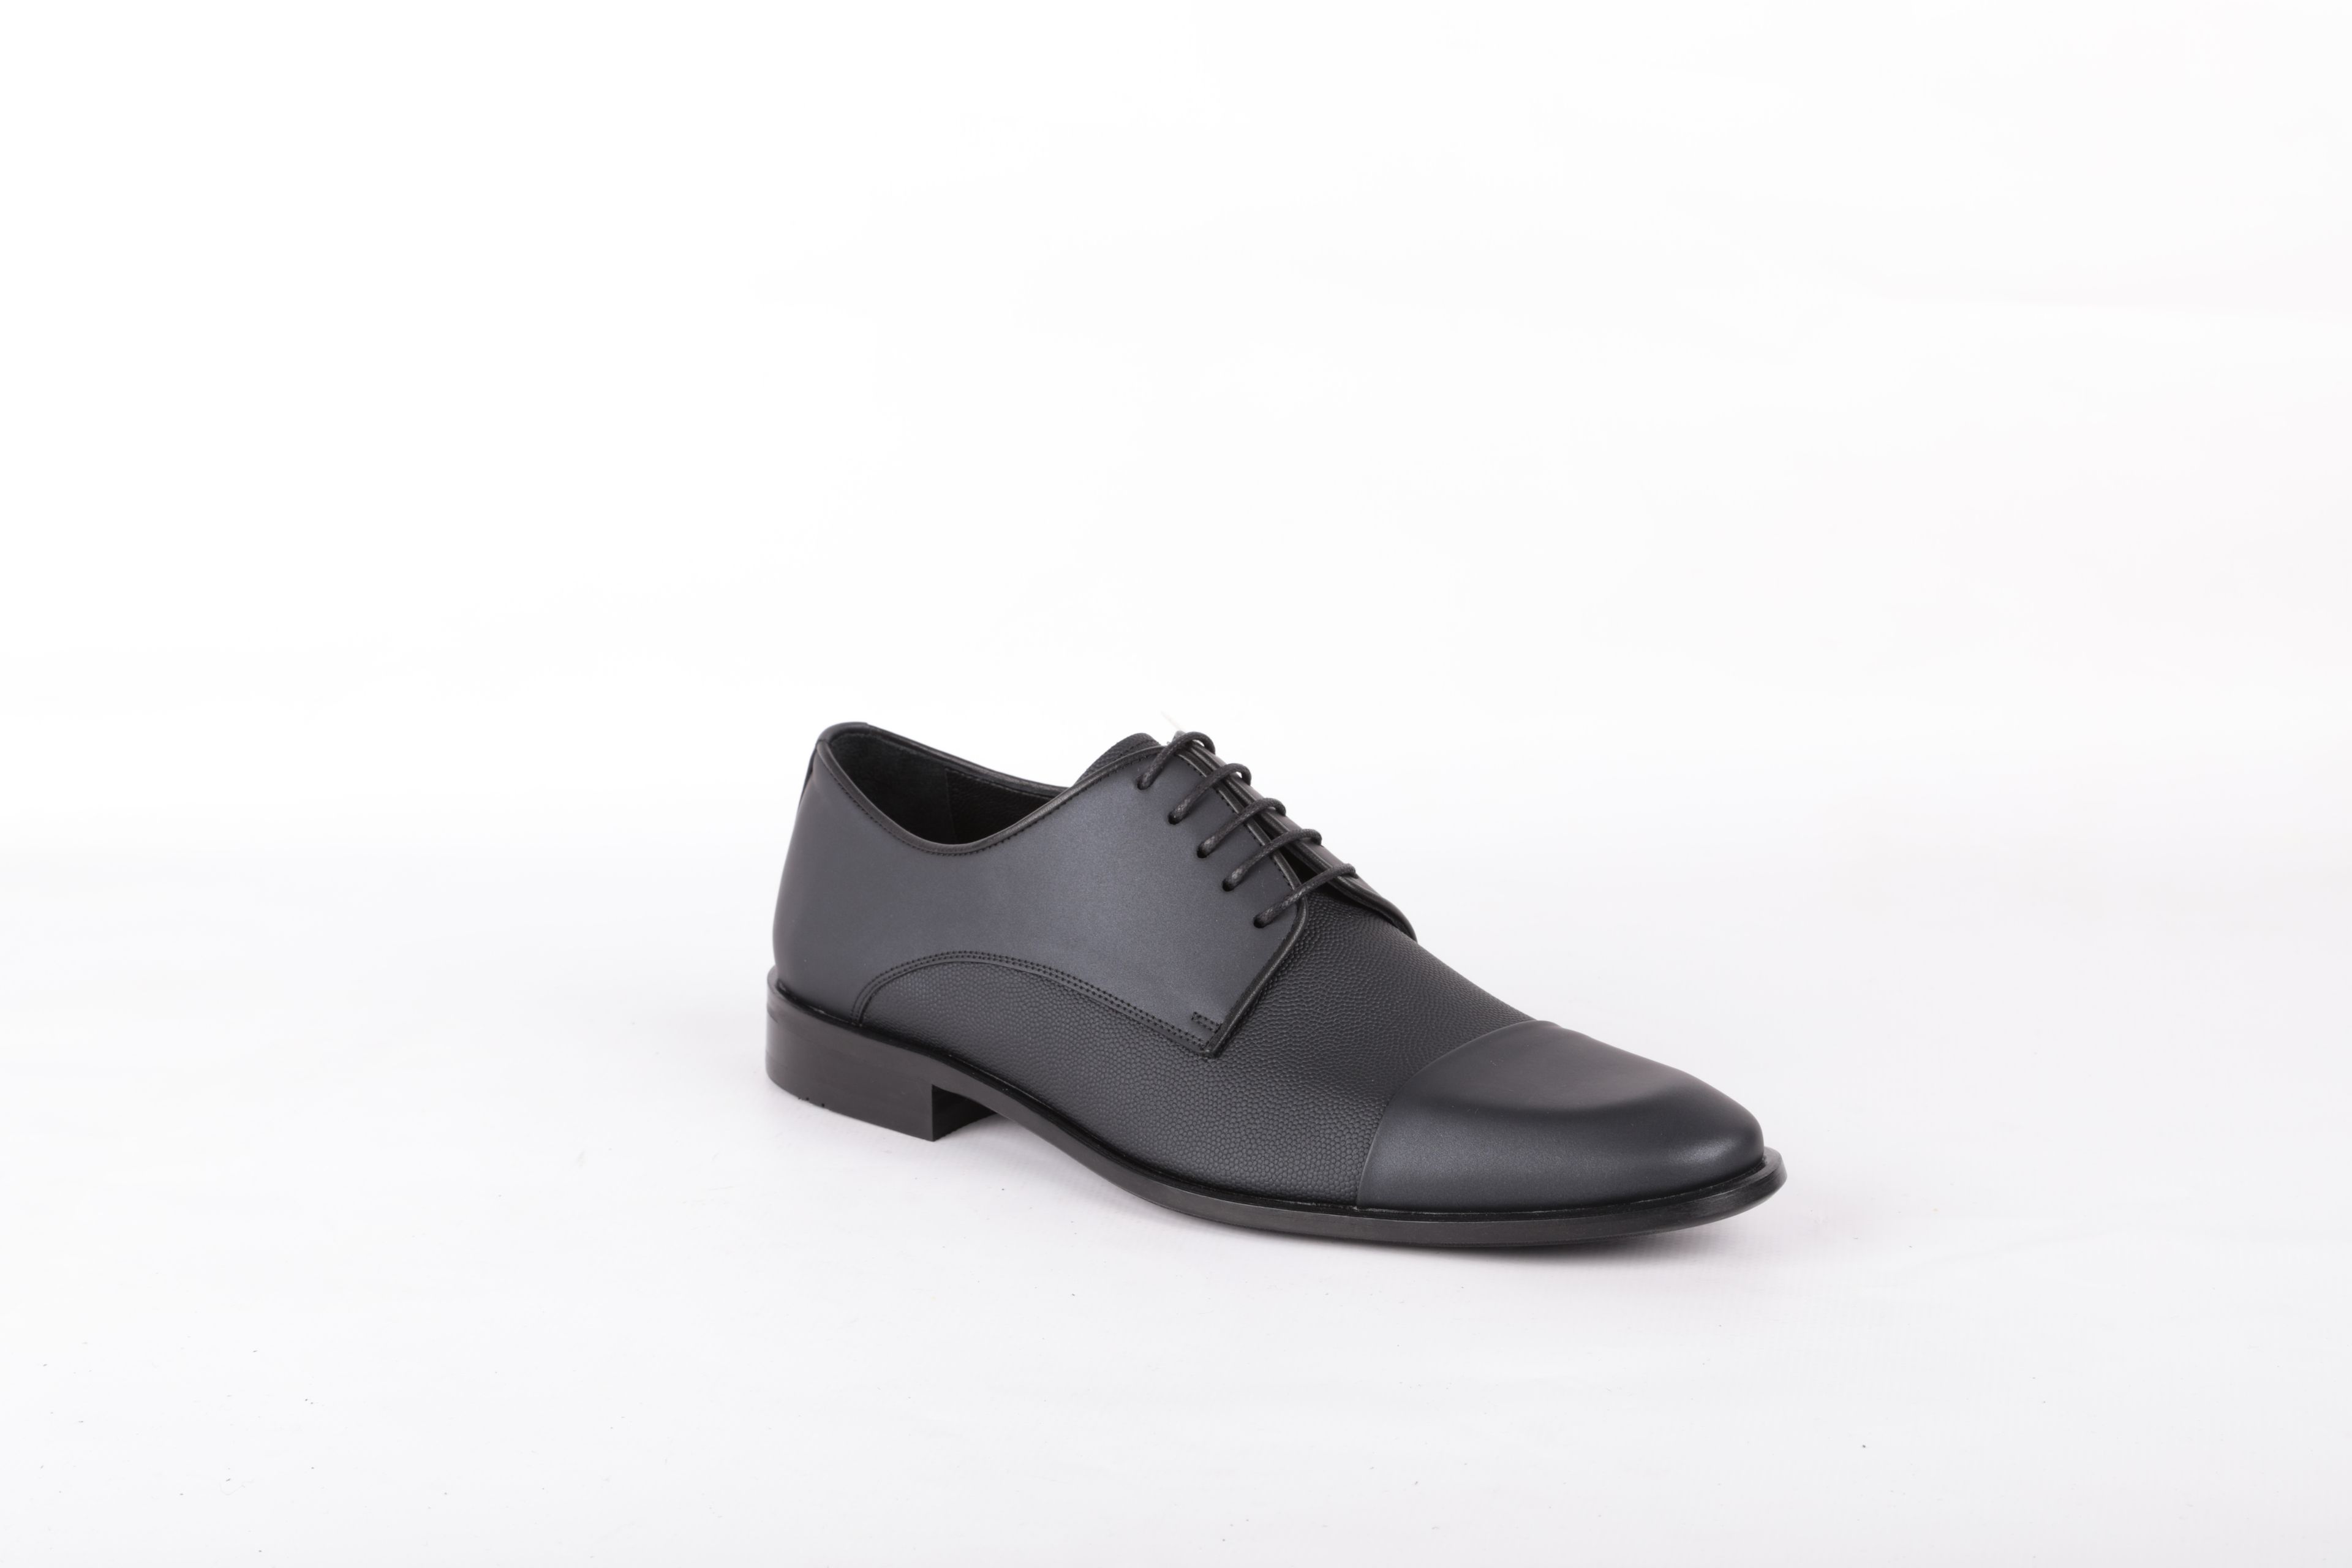 Libero 2474 Klasik Erkek Ayakkabı LACİVERT - Siyah